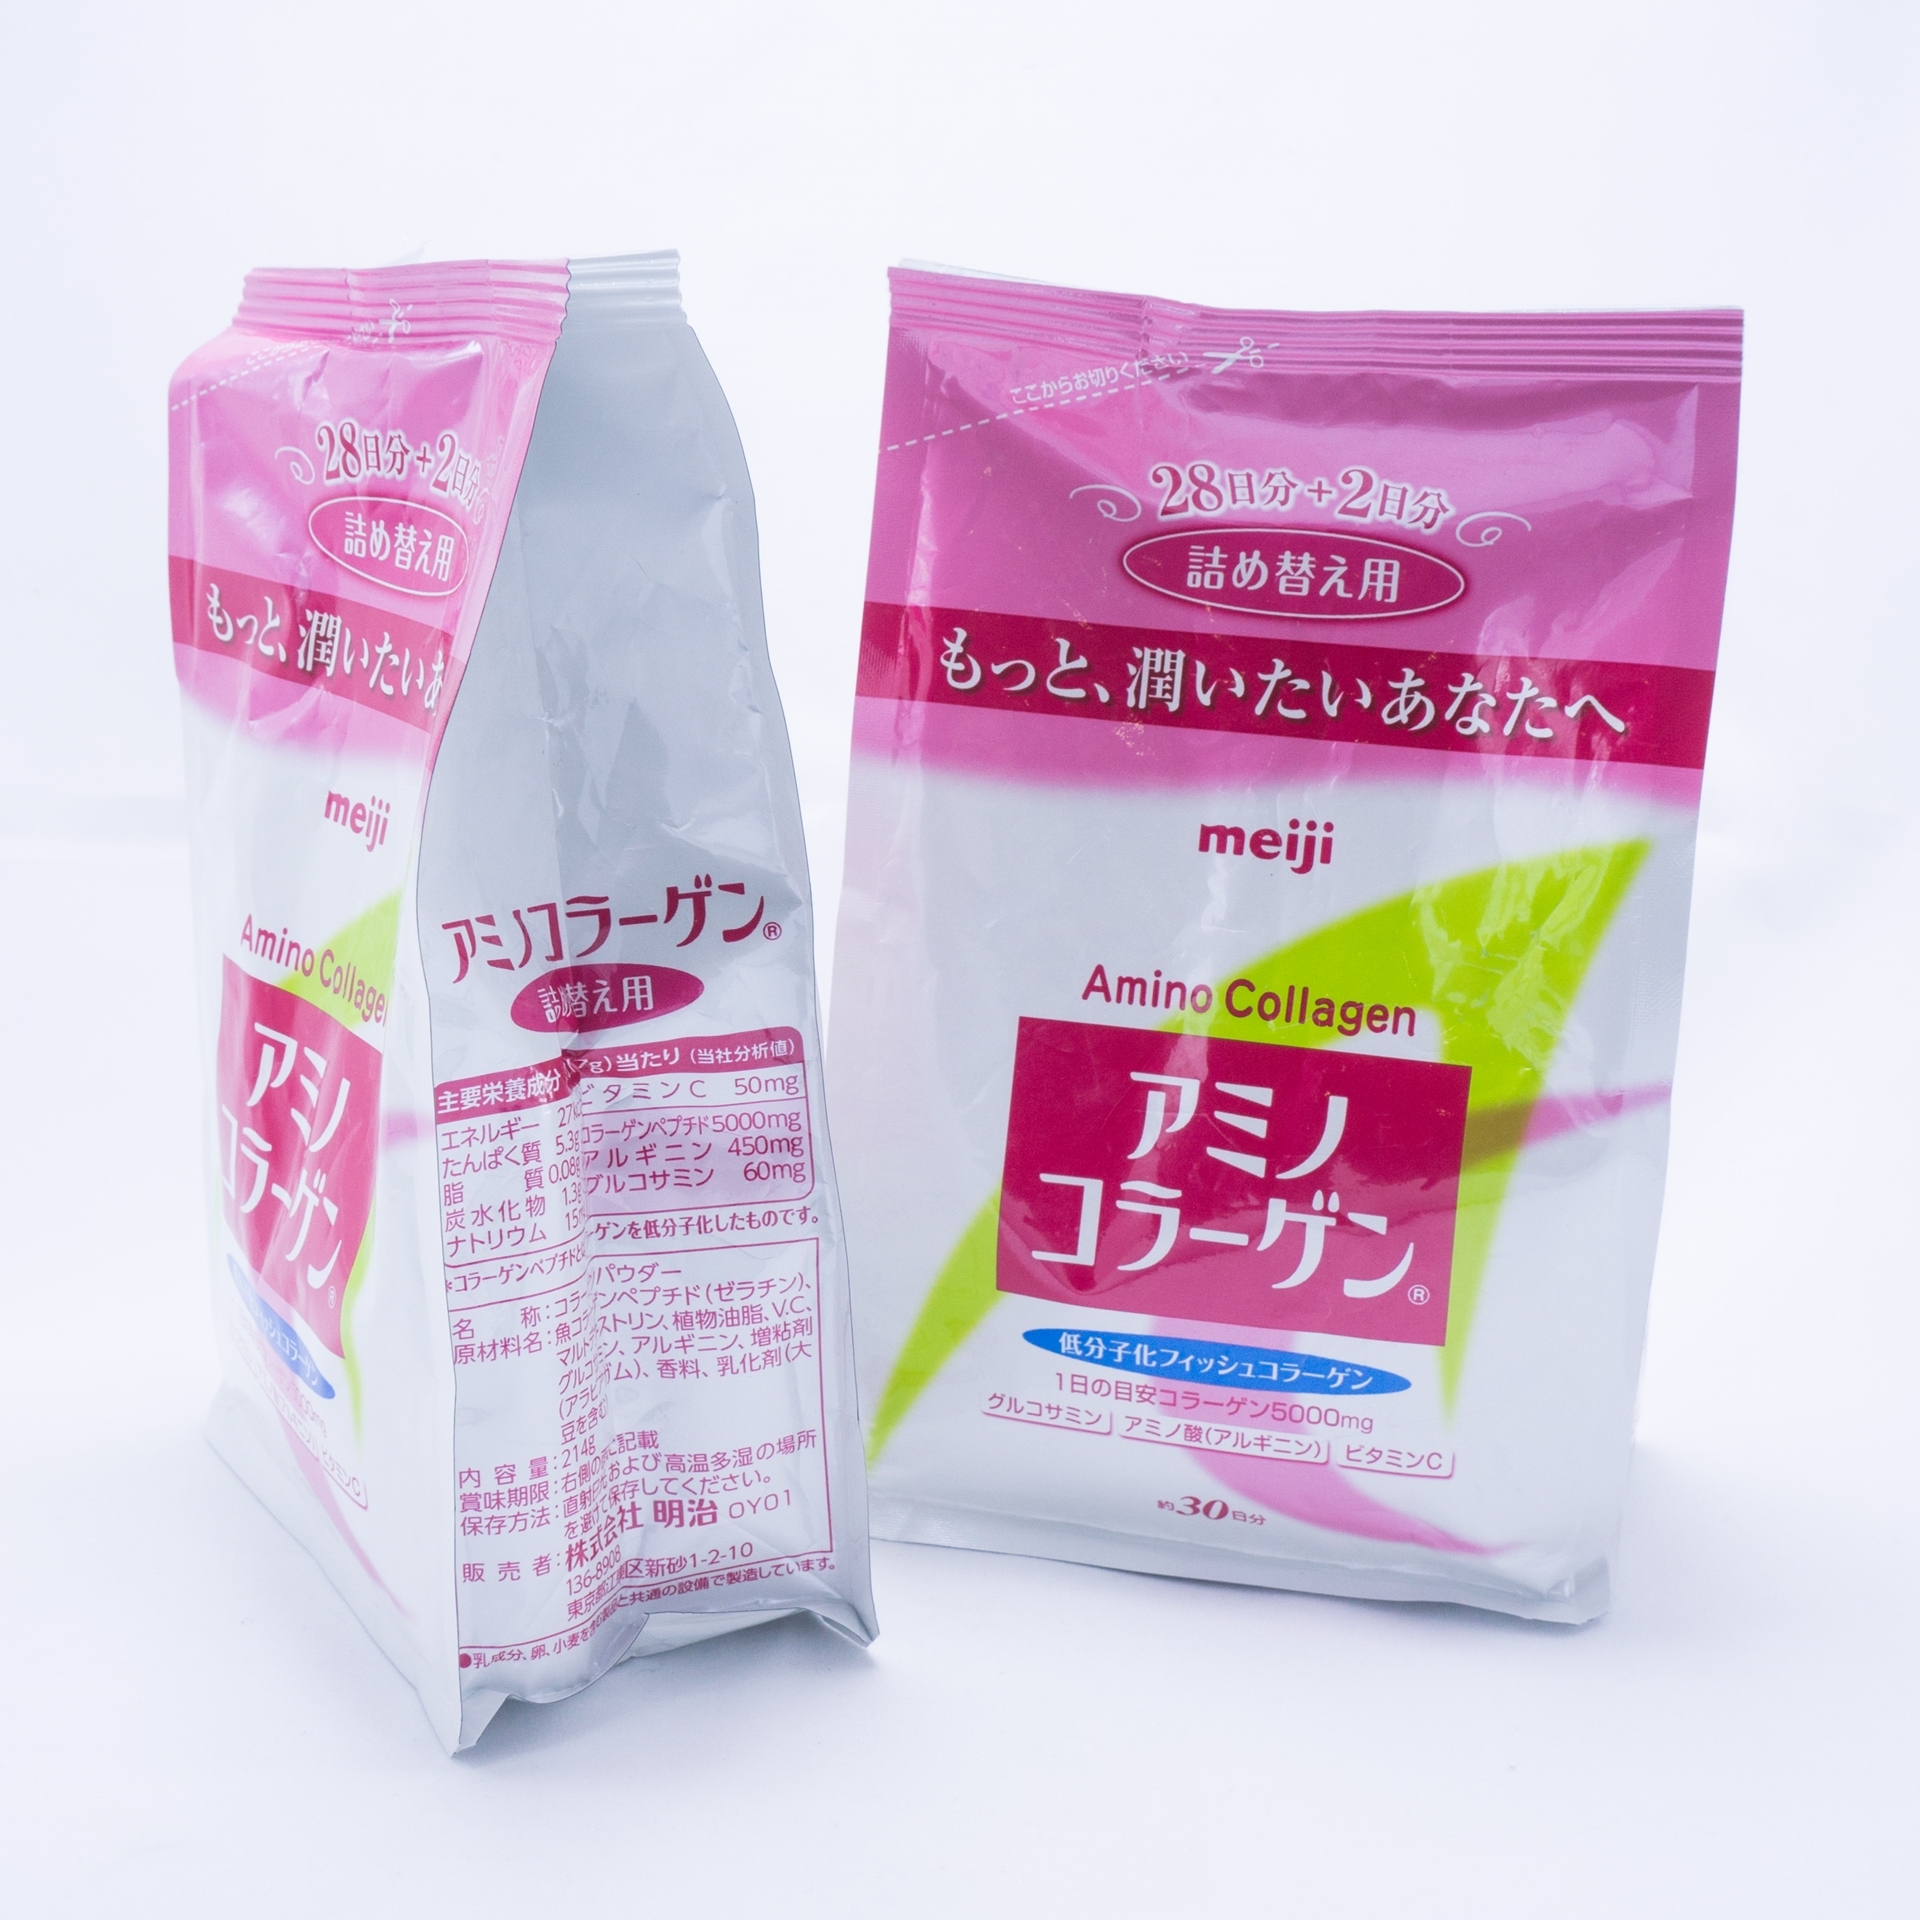 5 loại thực phẩm chức năng phụ nữ Nhật thường sử dụng giúp duy trì làn da mịn đẹp, chống lão hóa hiệu quả - Ảnh 4.